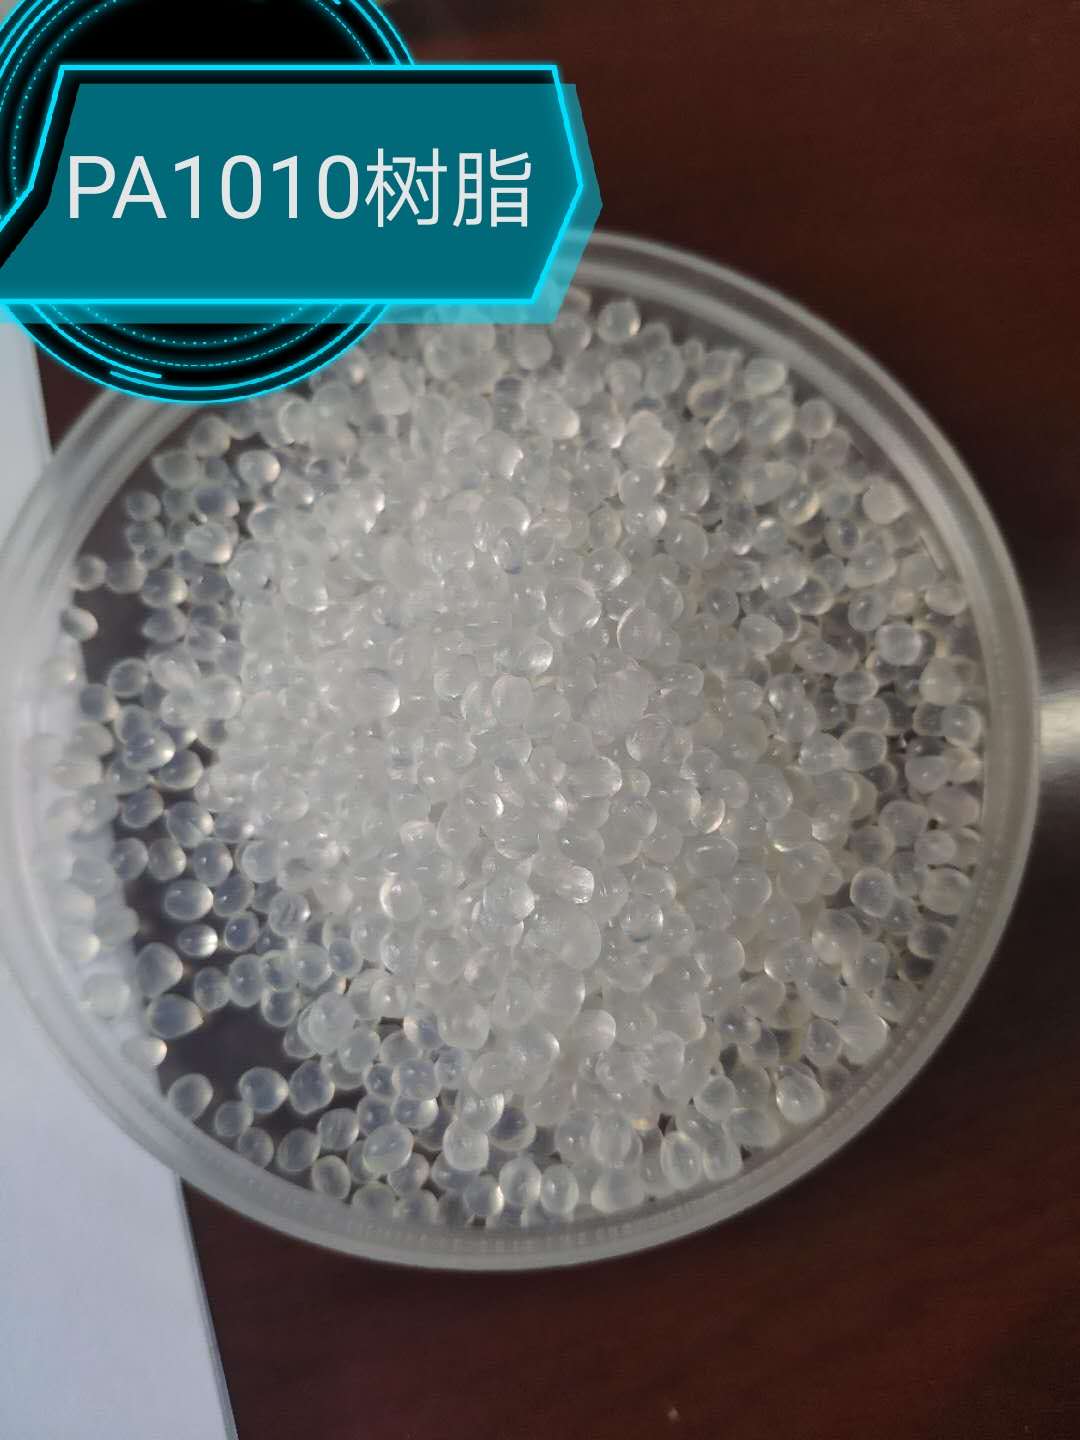 出售PA1010 树脂材料图片